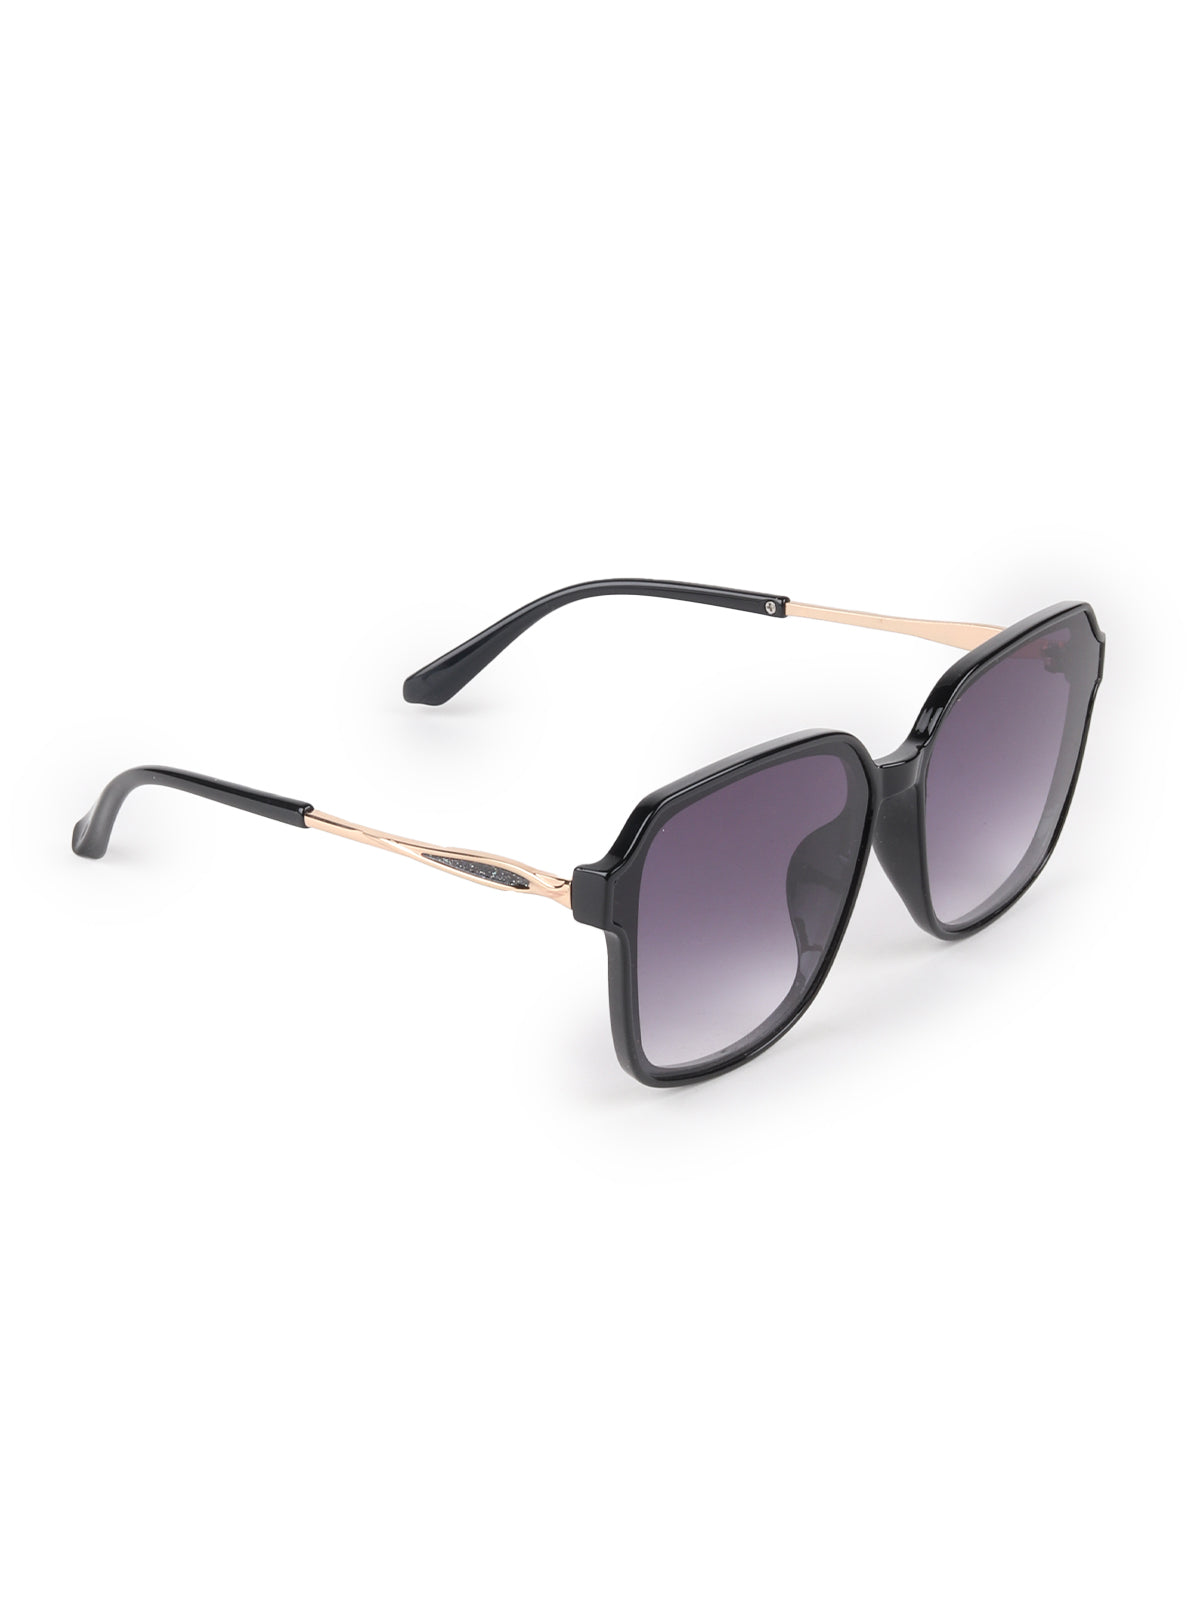 Odette Black Acrylic Square Sunglasses for Women